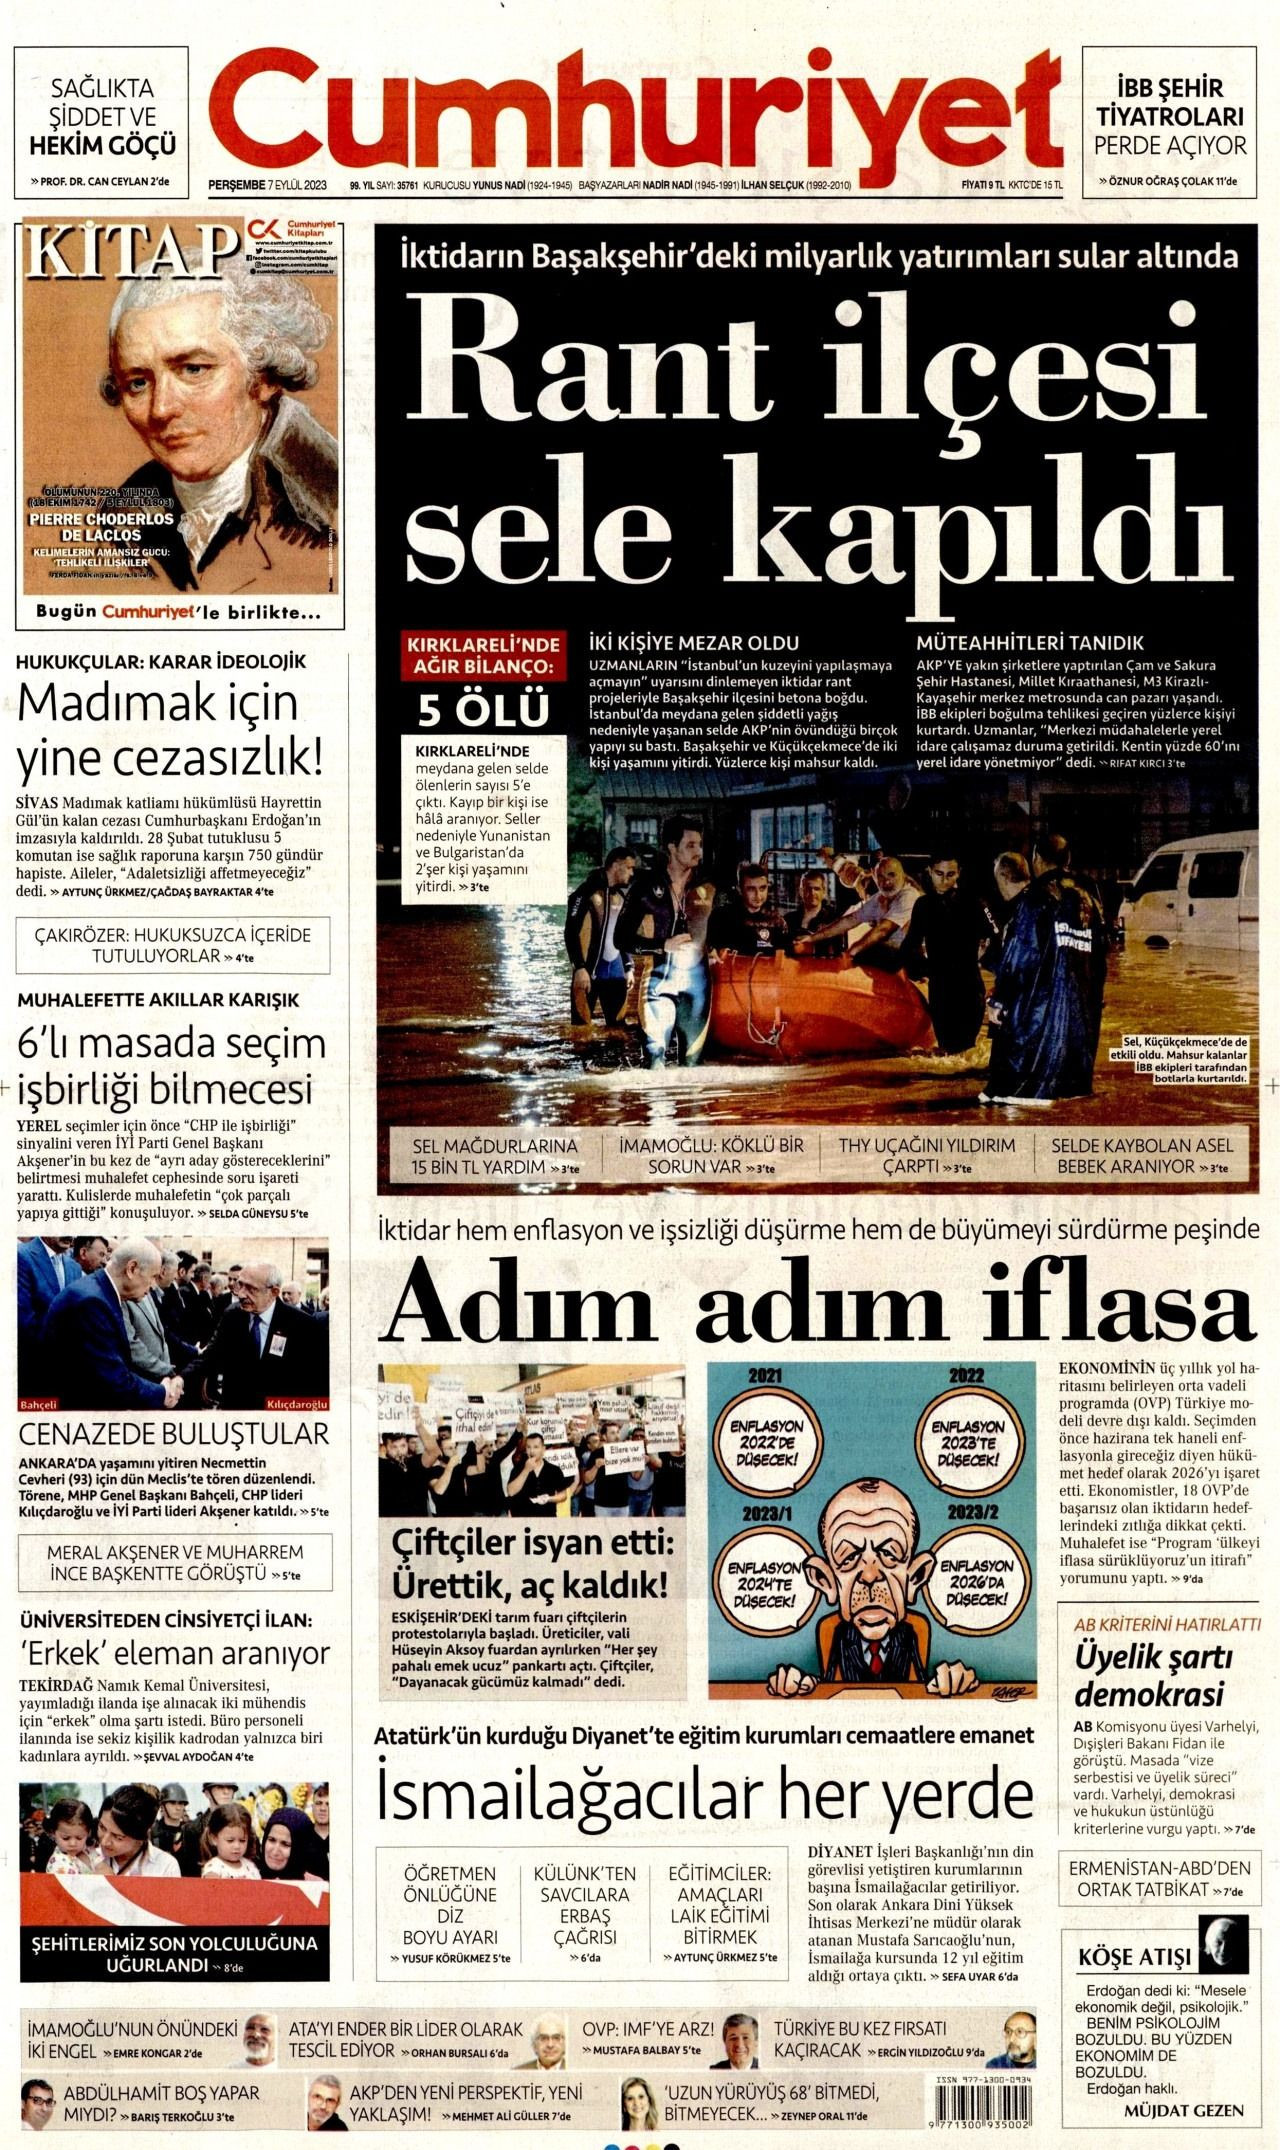 Günün manşetleri: 'Rant ilçesi sele kapıldı' - Sayfa 4